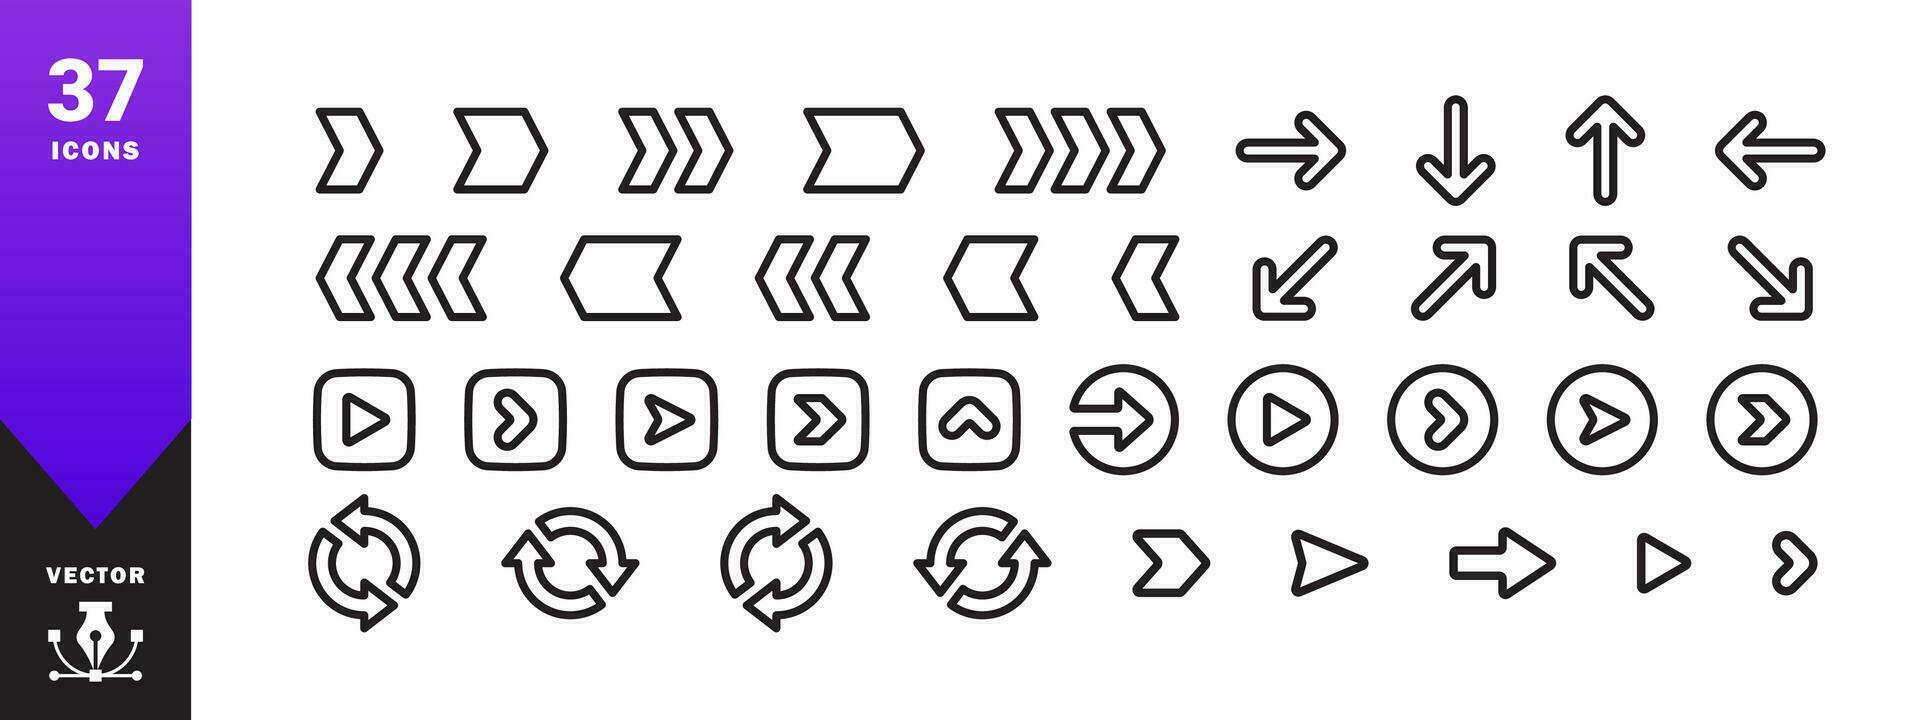 flechas íconos colocar. moderno sencillo flechas iconos vector escalable gráficos